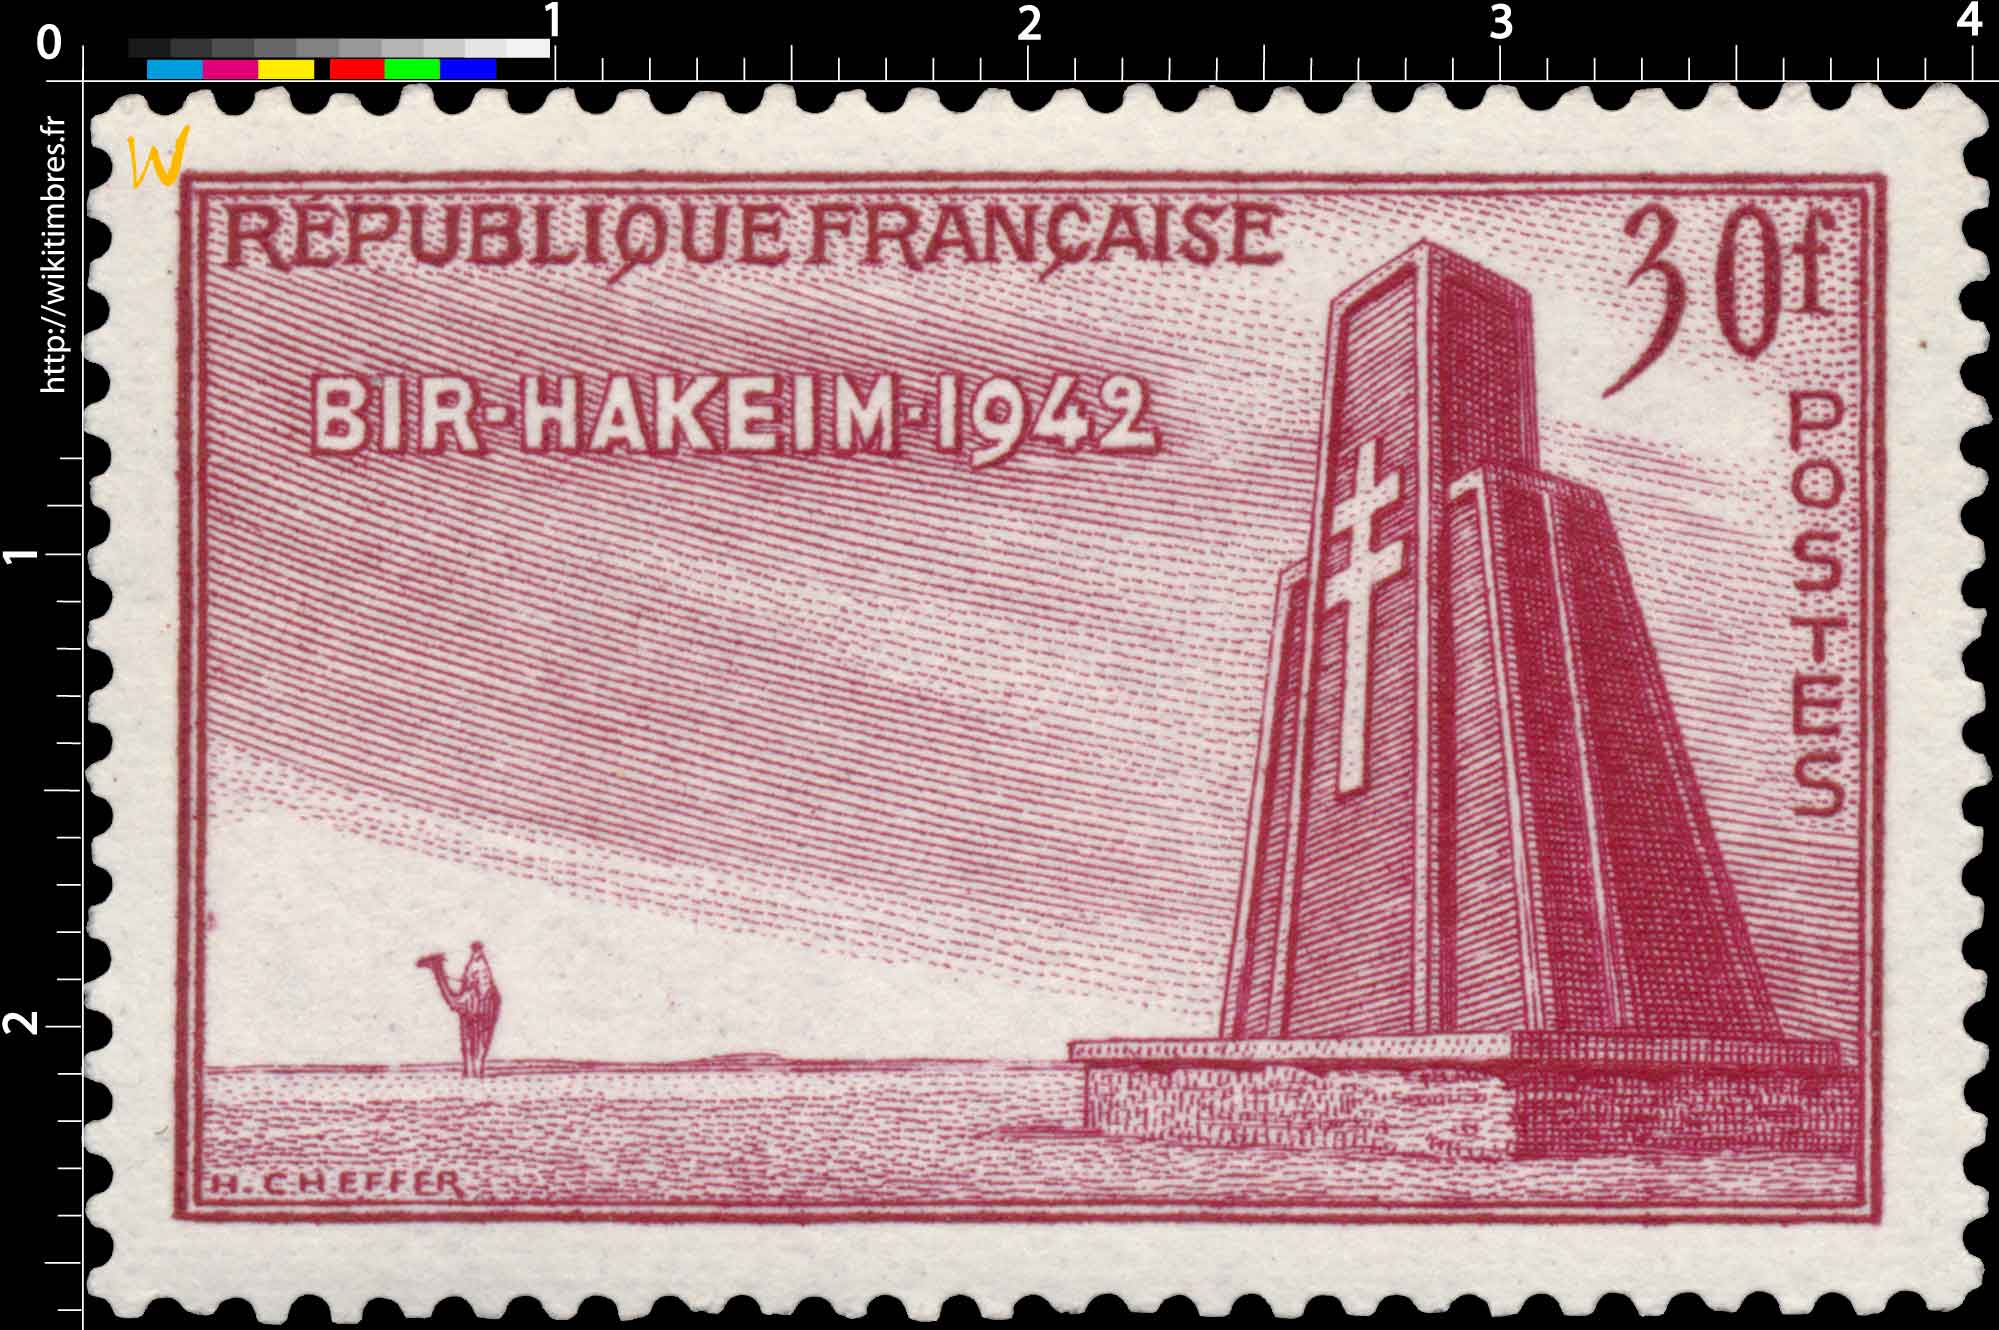 BIR-HAKEIM-1942